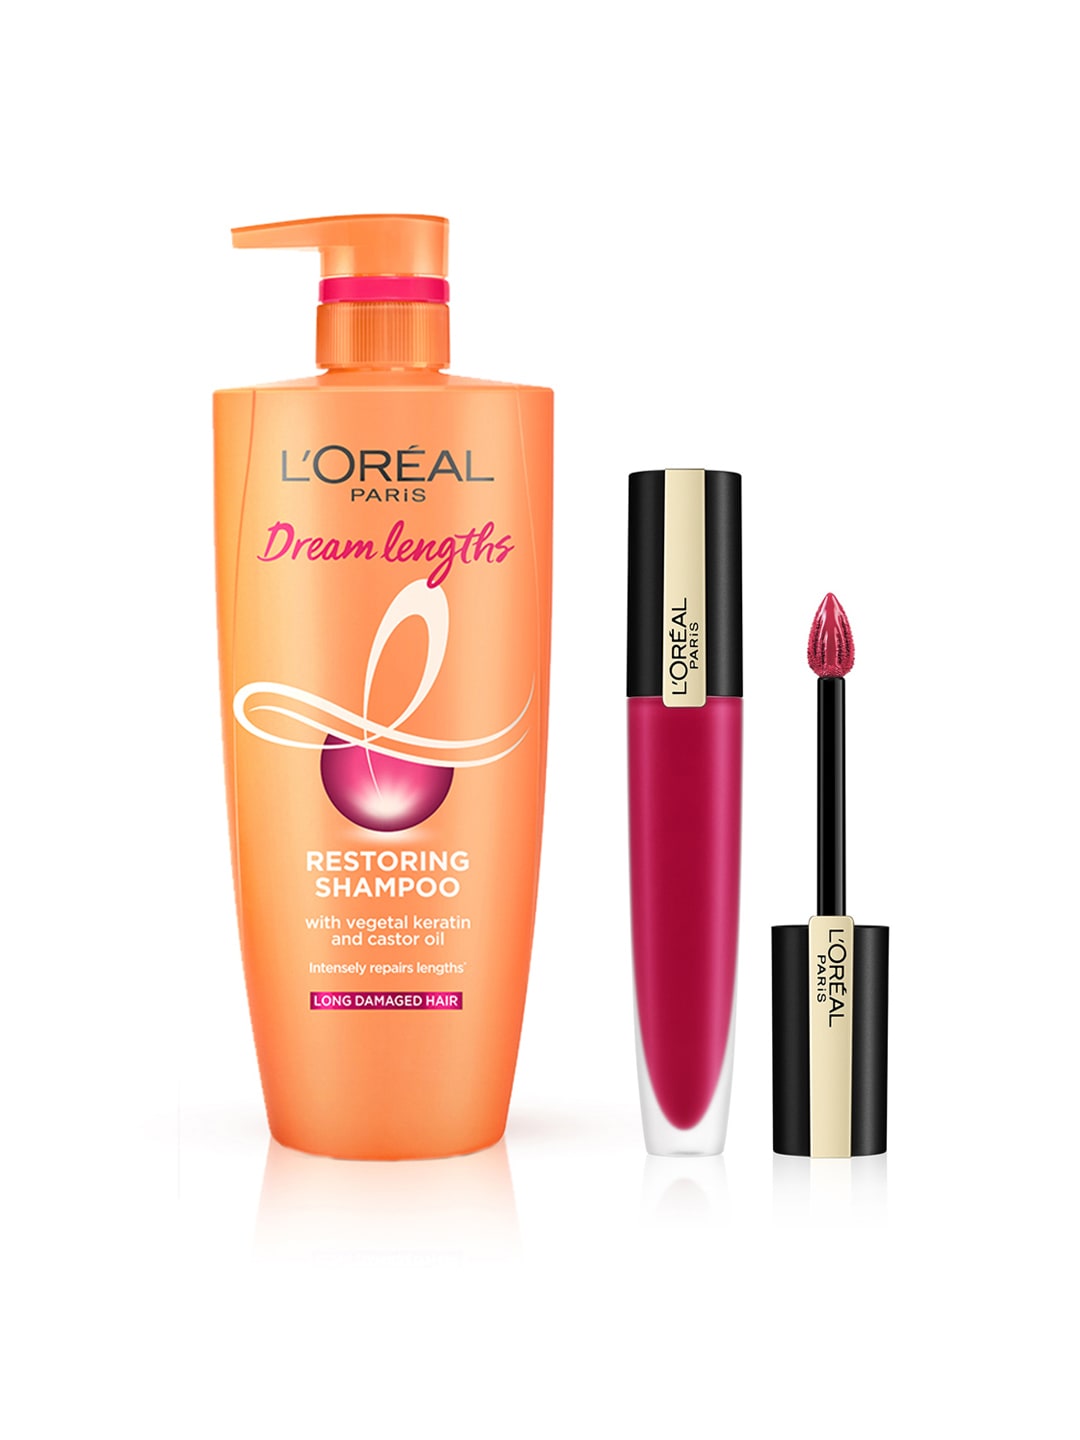 LOreal Paris Set of Dream Length Restoring Shampoo & Liquid Lipstick Price in India